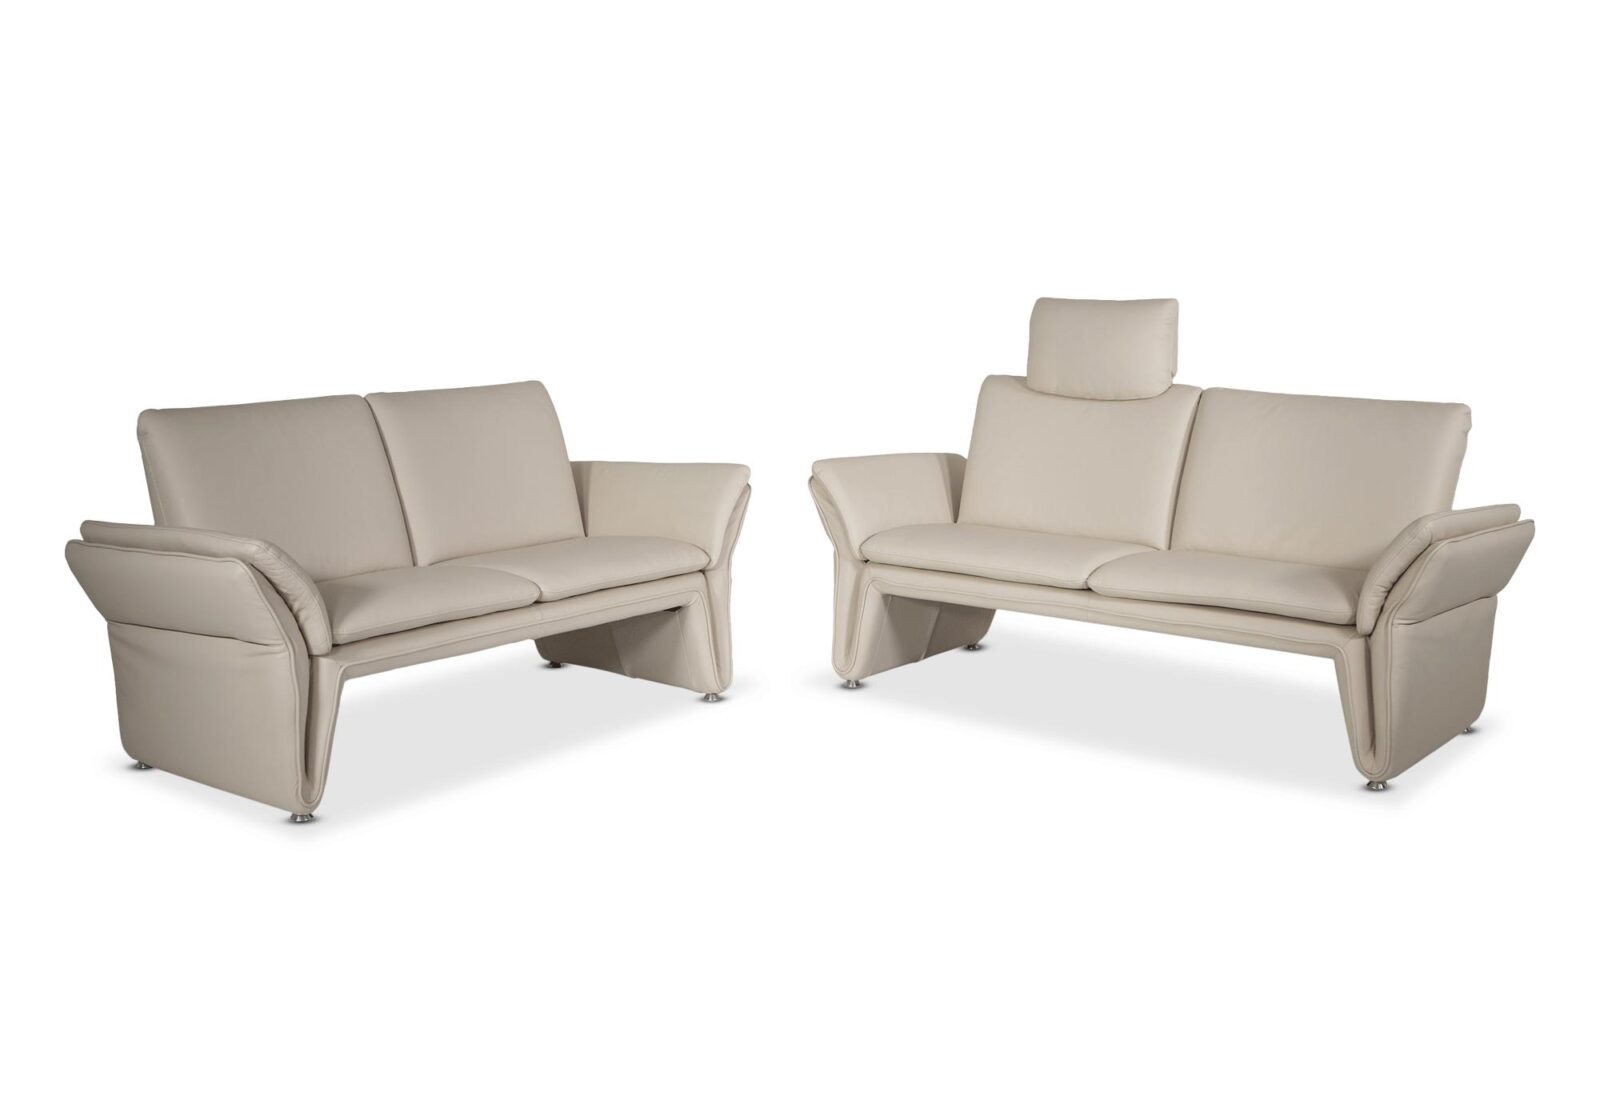 Polstergruppe Loto mit 2er und 2.5er Sofa. Bezug: Leder. Farbe: Beige. Erhältlich bei Möbel Gallati.